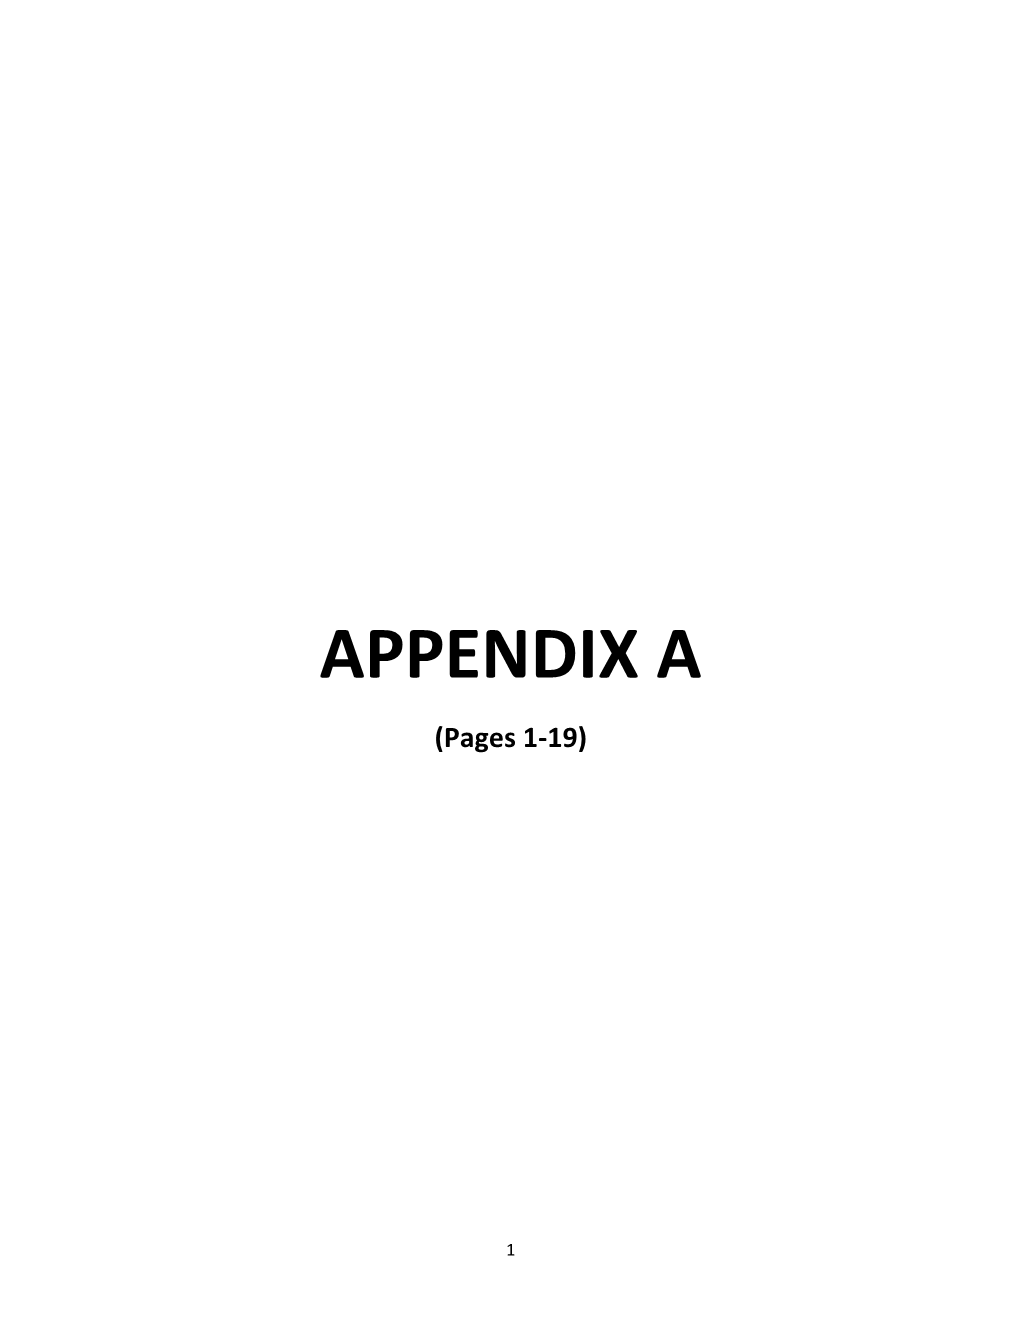 APPENDIX a (Pages 1-19)